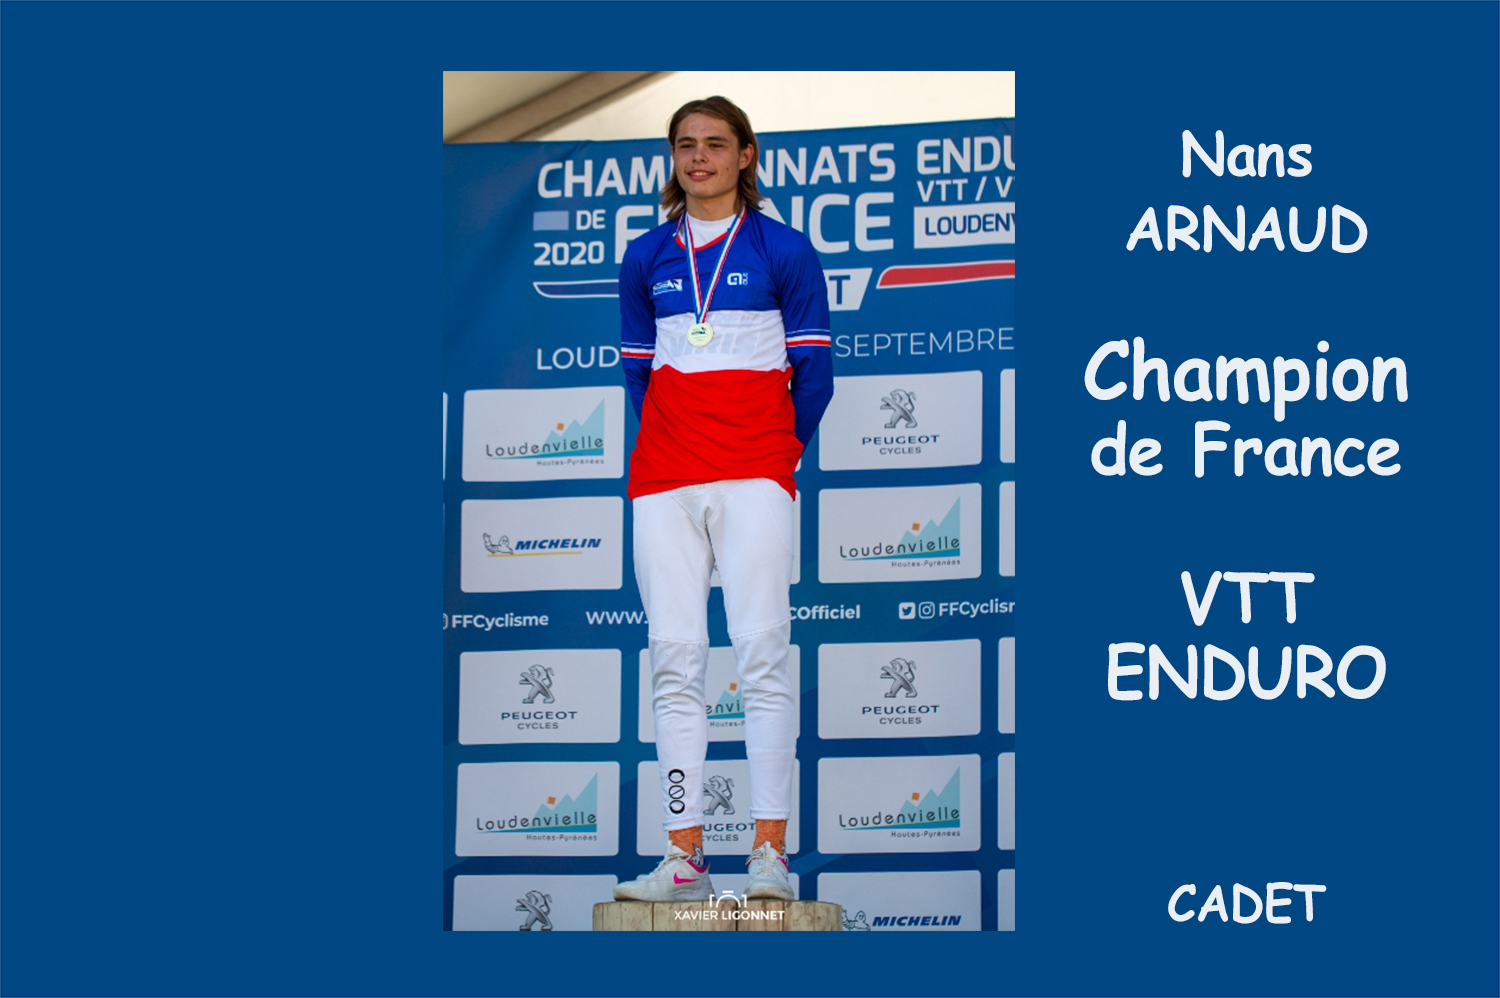 Le dignois Nans Arnaud Champion de France de VTT Enduro